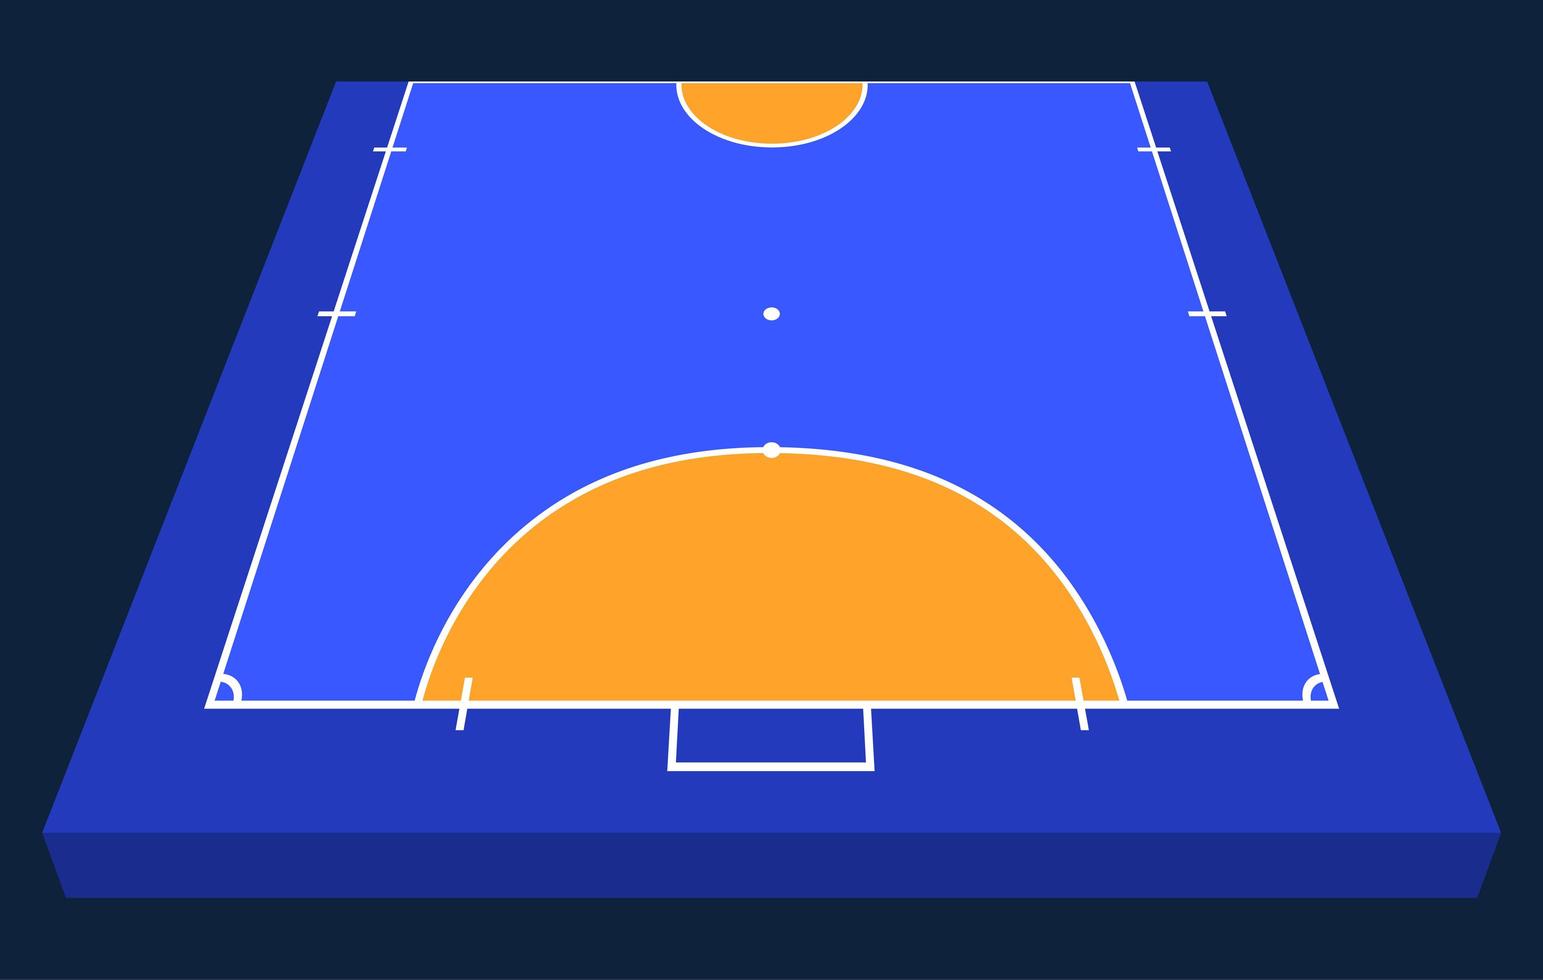 vista en perspectiva de medio campo de fútbol sala. contorno naranja de líneas ilustración de vector de campo de fútbol sala.